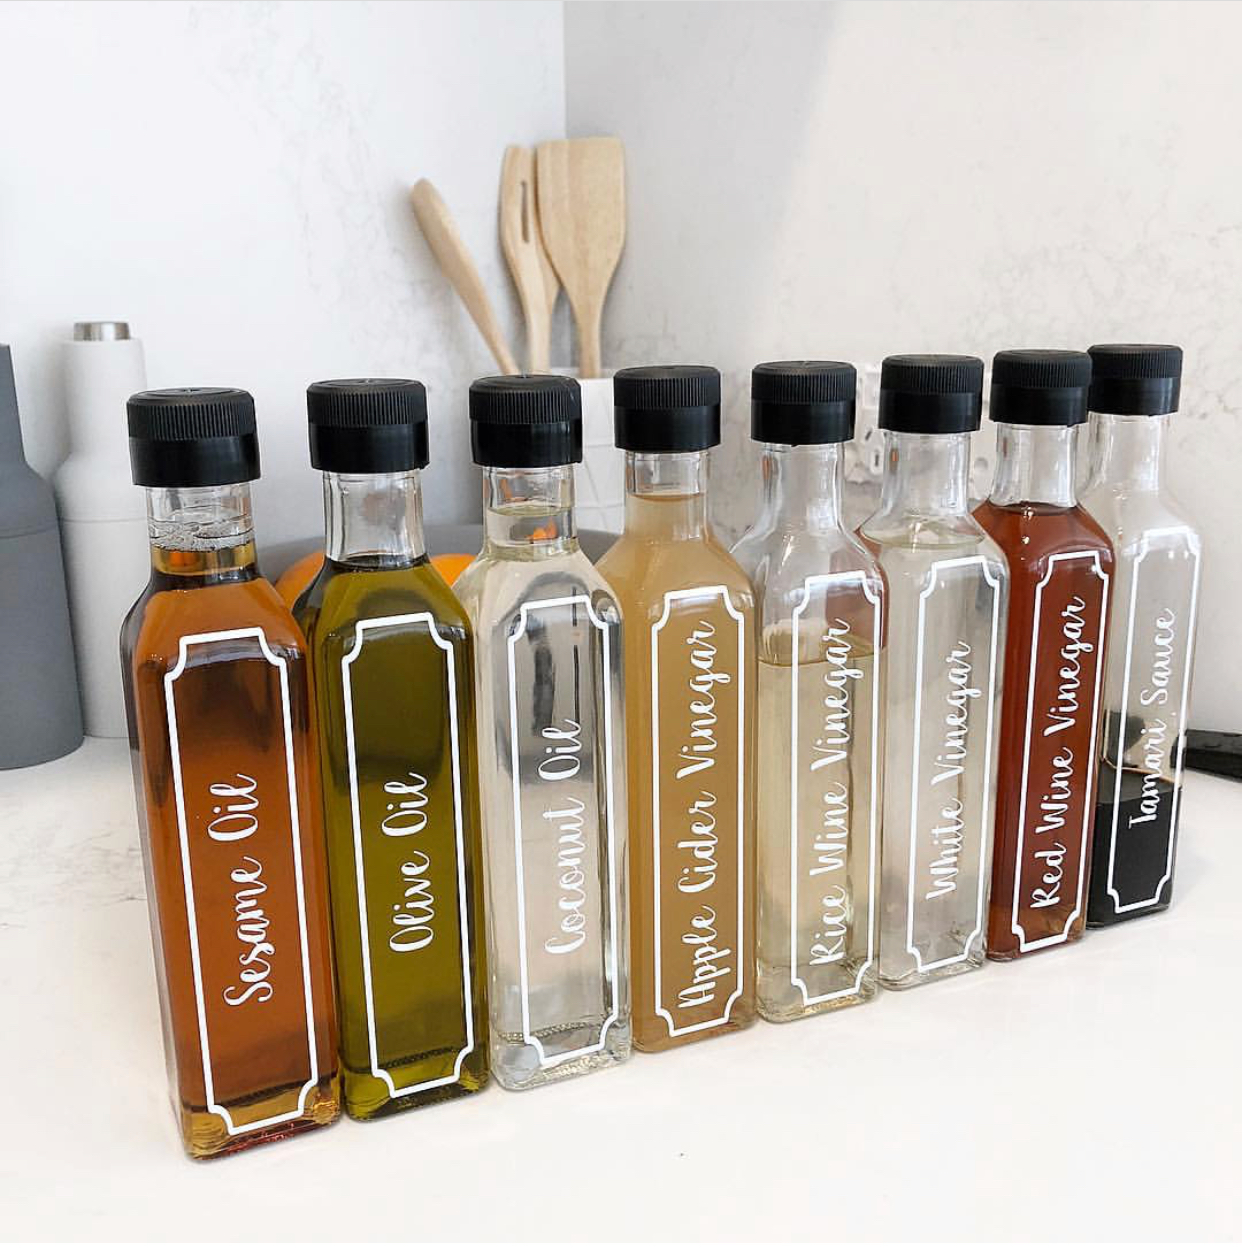 labelled oil and vinegar bottles